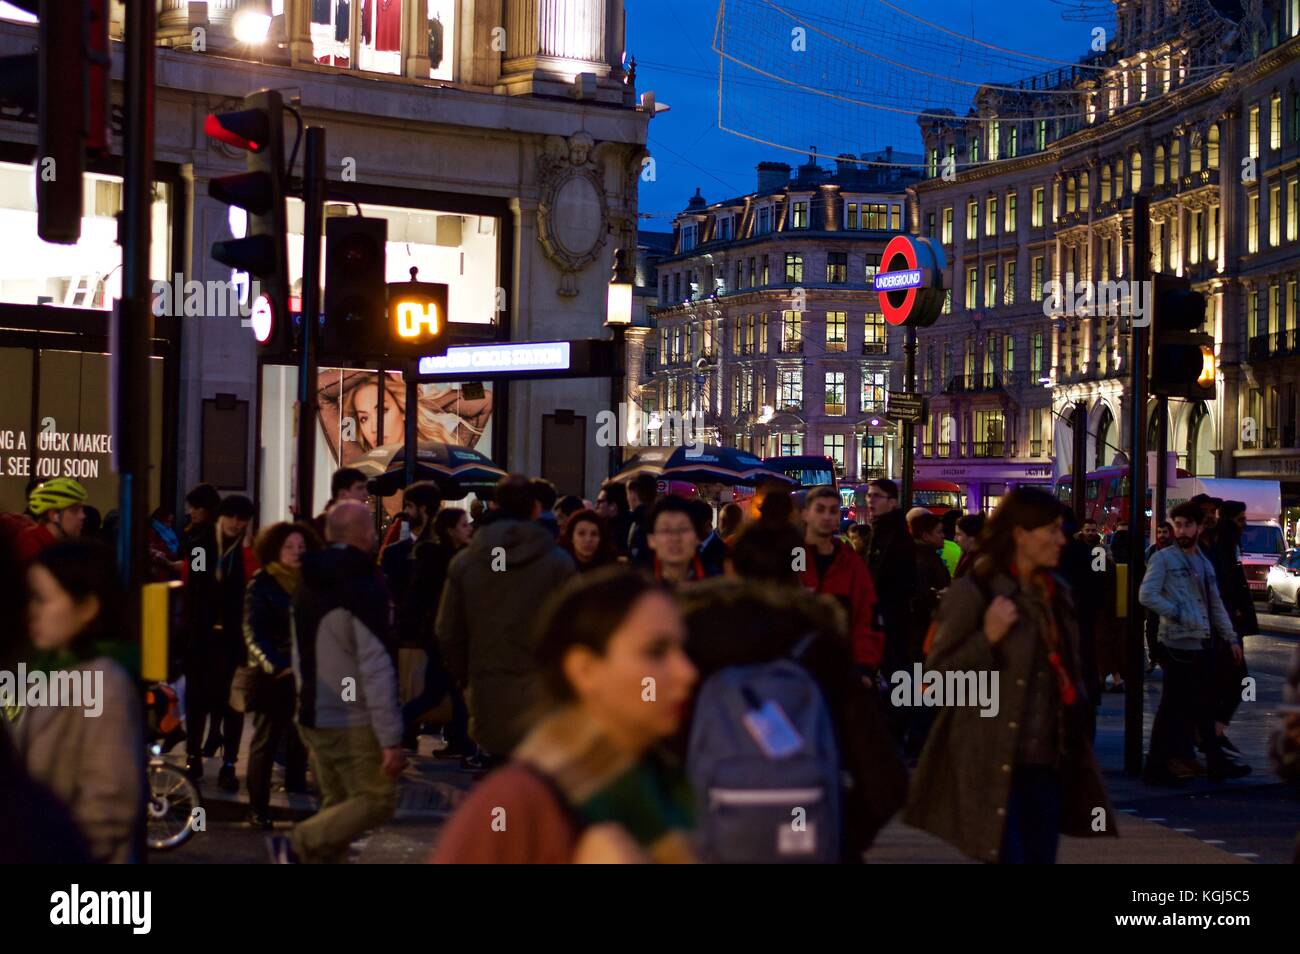 Des foules de shoppers noël crossing Oxford Street près de Oxford Circus, Londres, Royaume-Uni, 2017 Banque D'Images